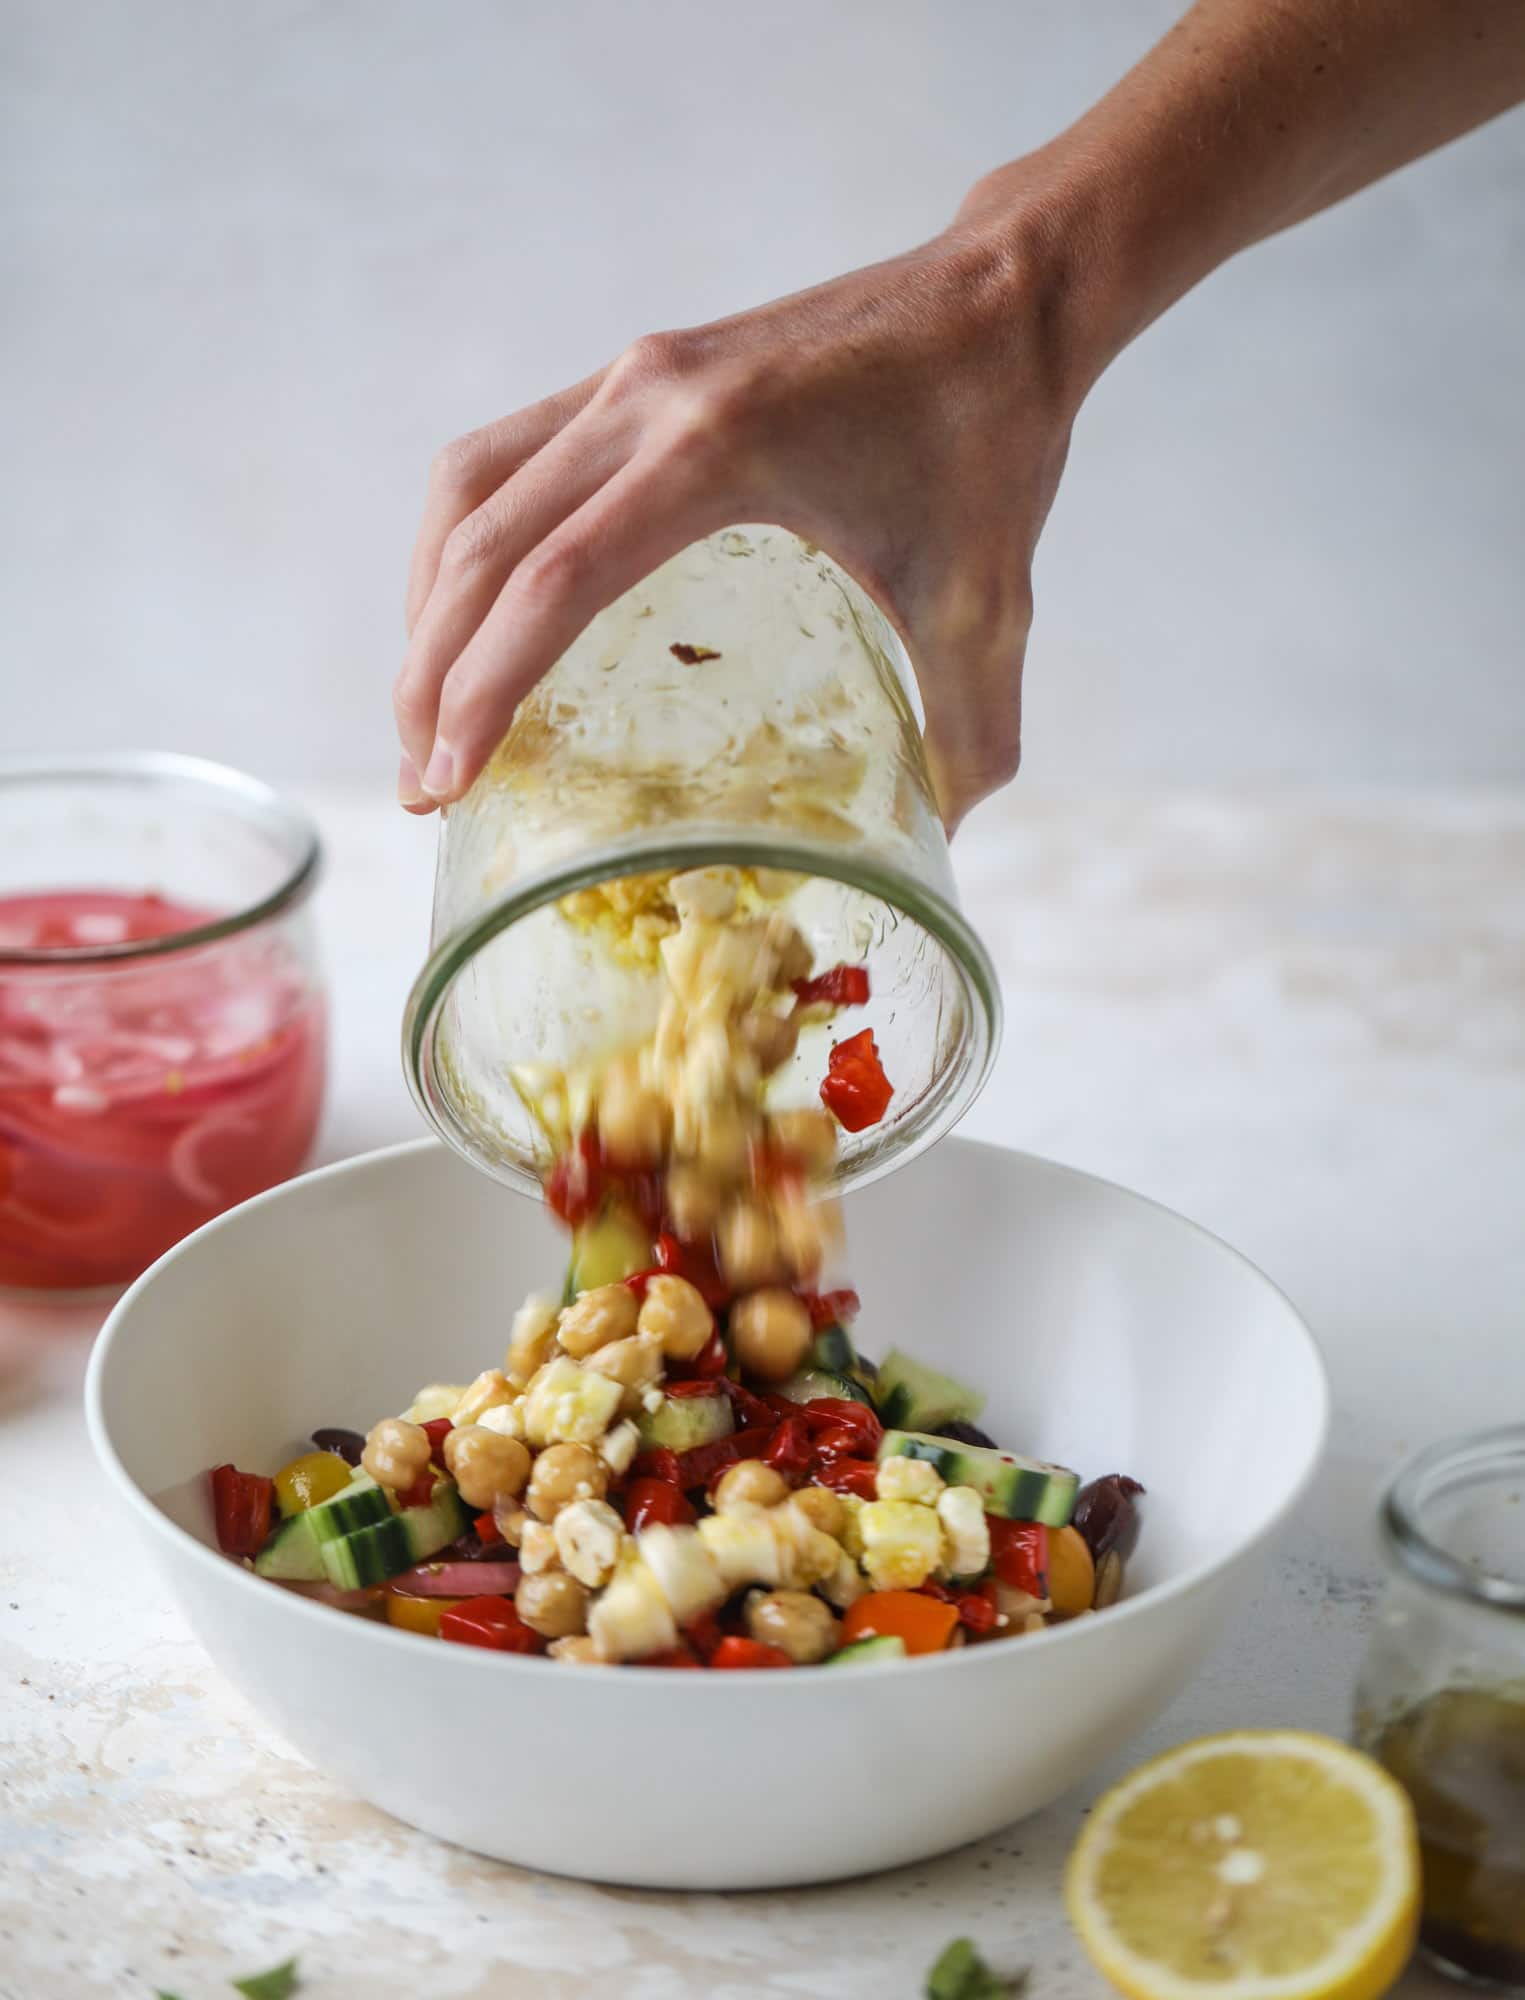 这道令人难以置信的罐装希腊米粒沙拉简直太好吃了!烹饪方法简单又美味，非常令人满足，非常适合准备午餐。这款罐装沙拉是工作日美味的午餐，能让你感到饱腹和快乐!#沙拉#罐子#希腊麦片#食谱#健康#午餐#准备餐食欧宝平台怎么样